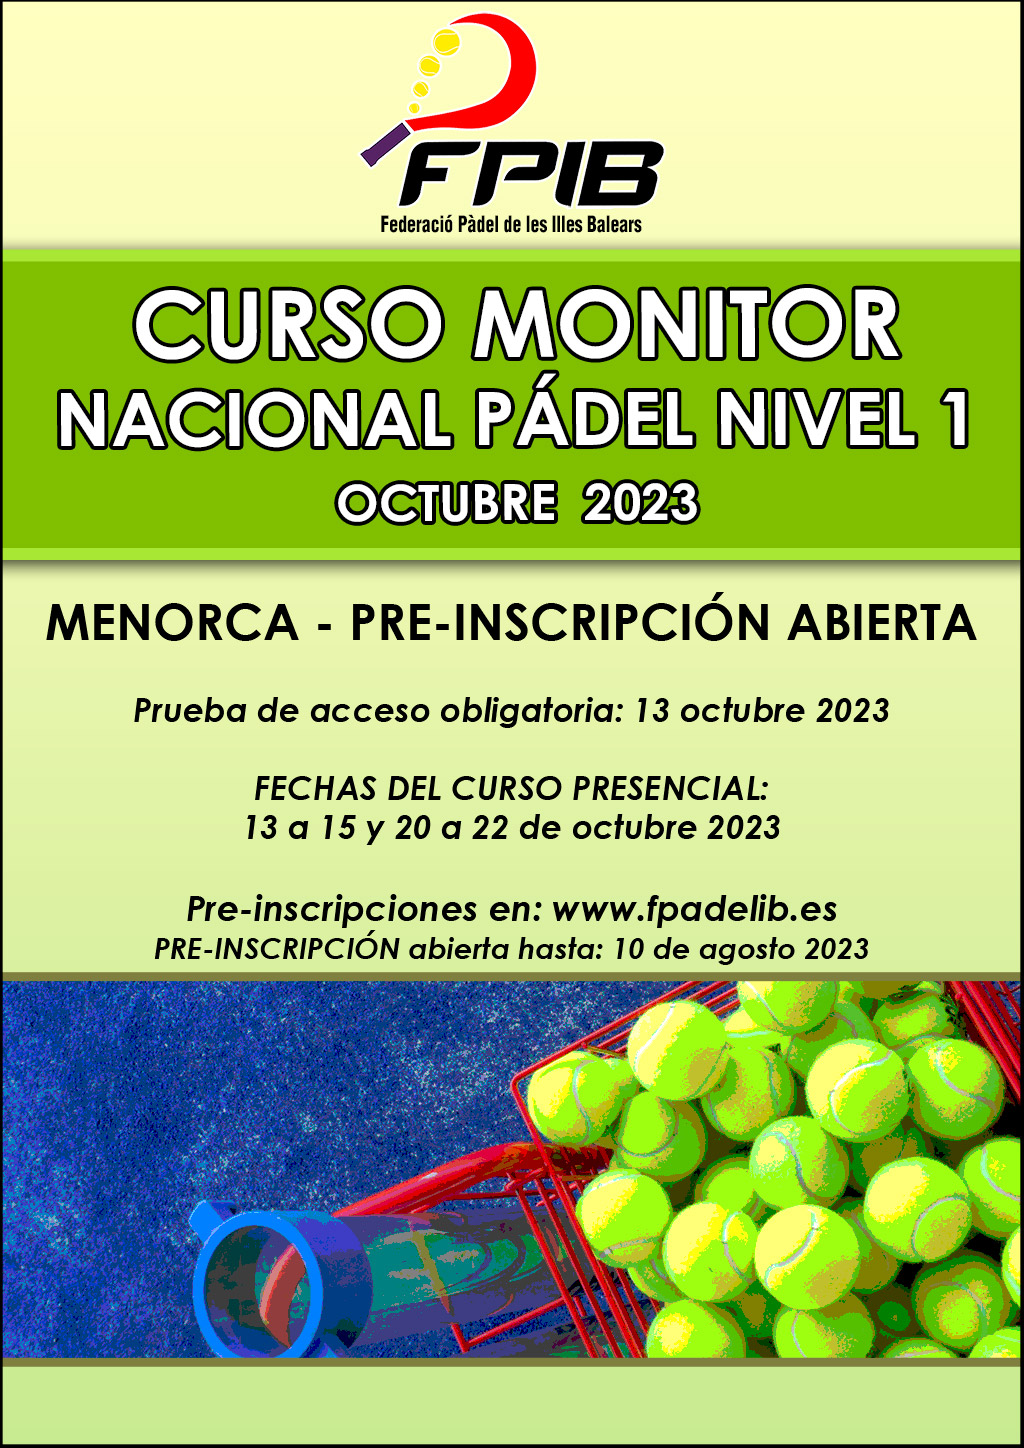 2022 Curso monitor Menorca octubre 2023